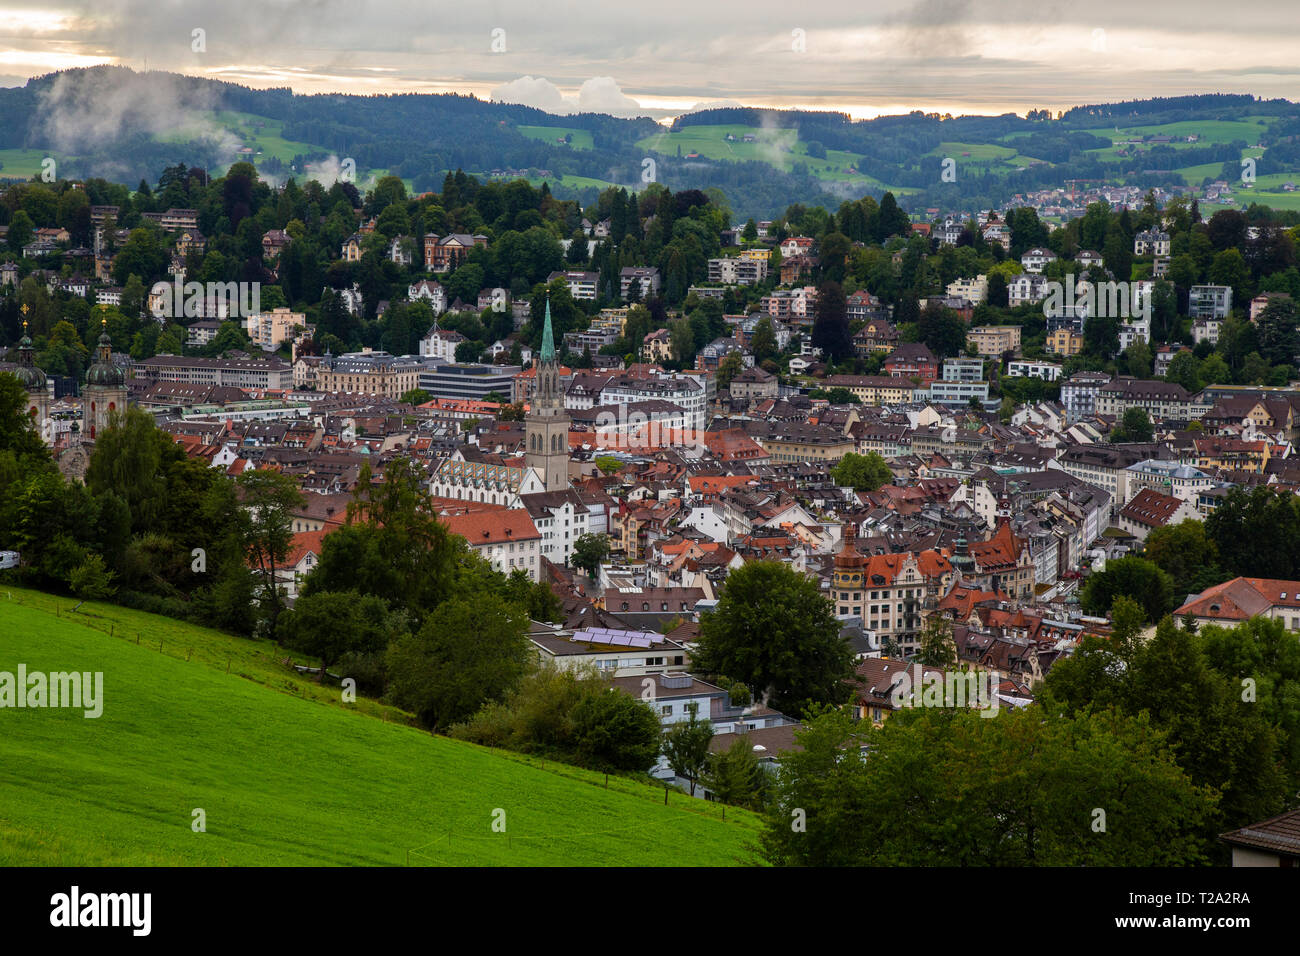 Mappa generale della bella città svizzera di San Gallo. San Gallo o tradizionalmente è una cittadina svizzera e la capitale del cantone di San Gallo. Esso evol Foto Stock